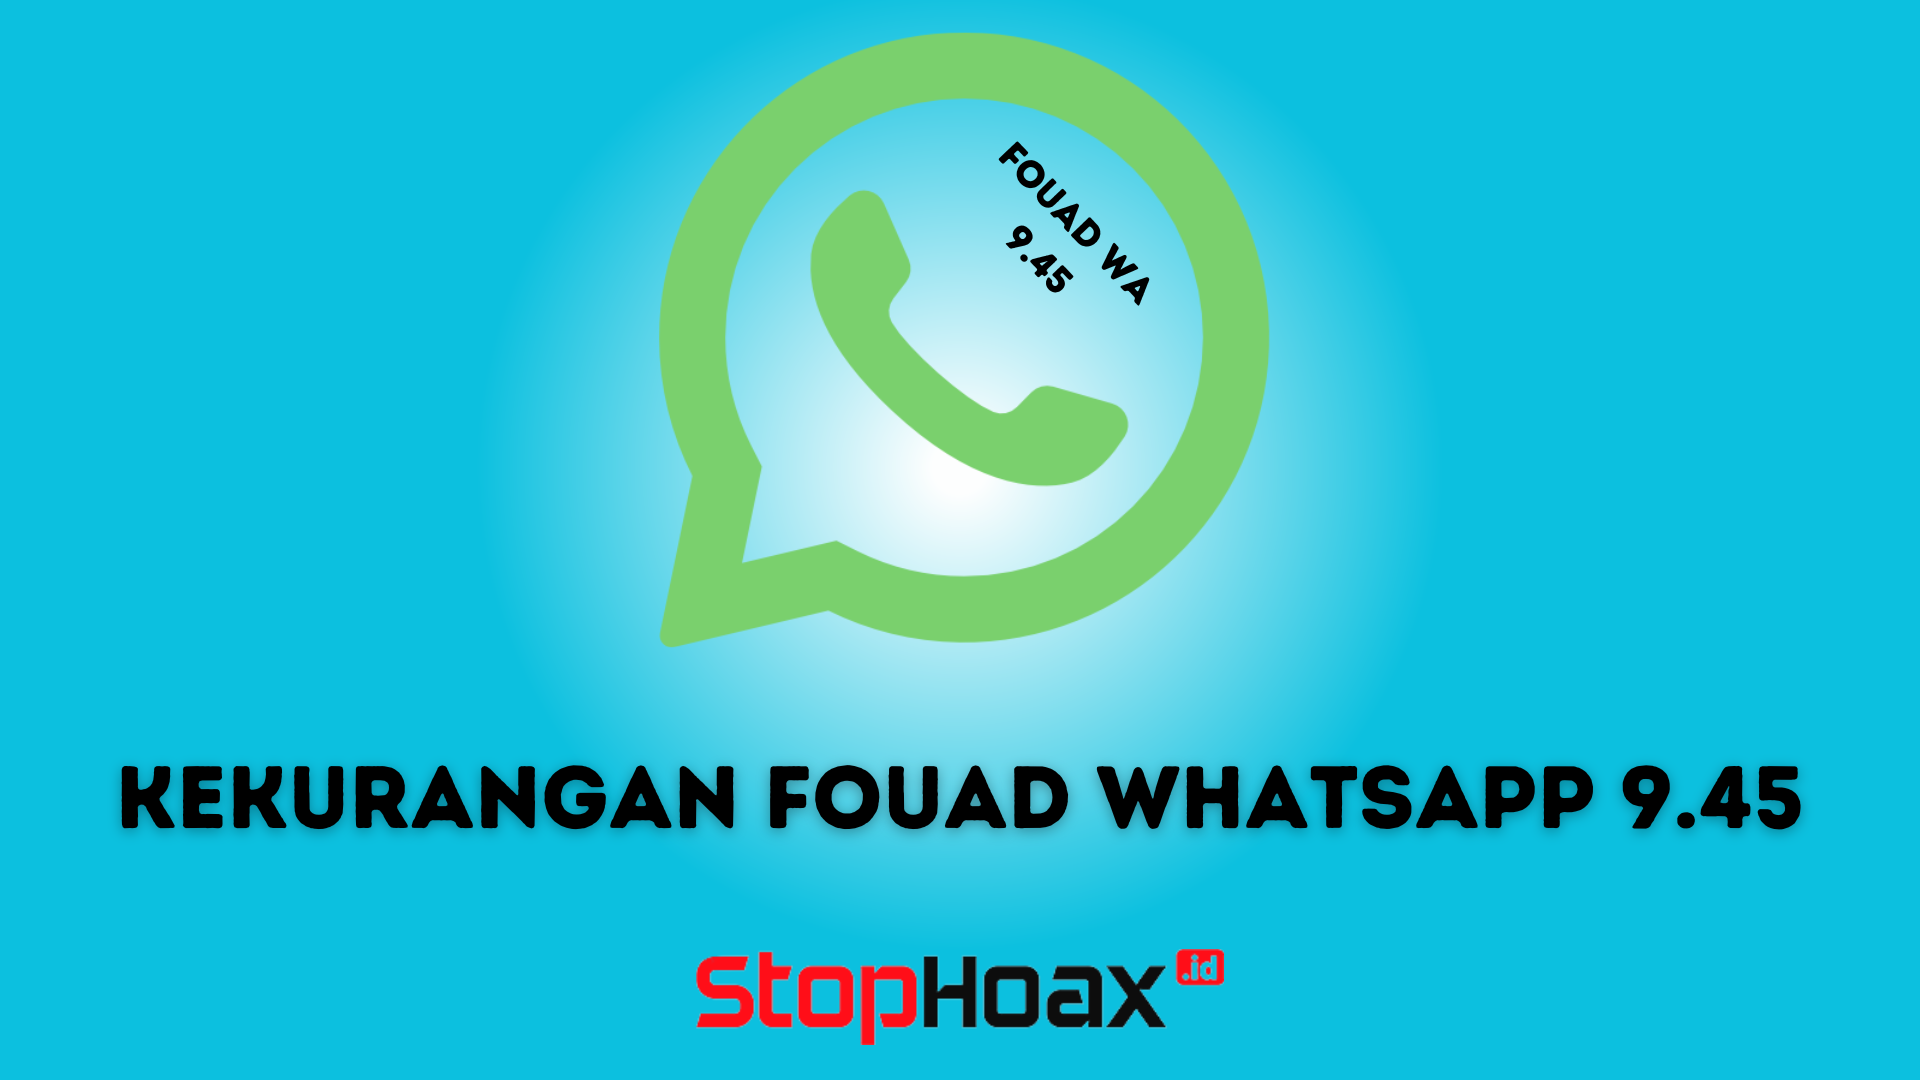 Kelebihan dan Kekurangan Fouad WhatsApp yang Perlu Diketahui